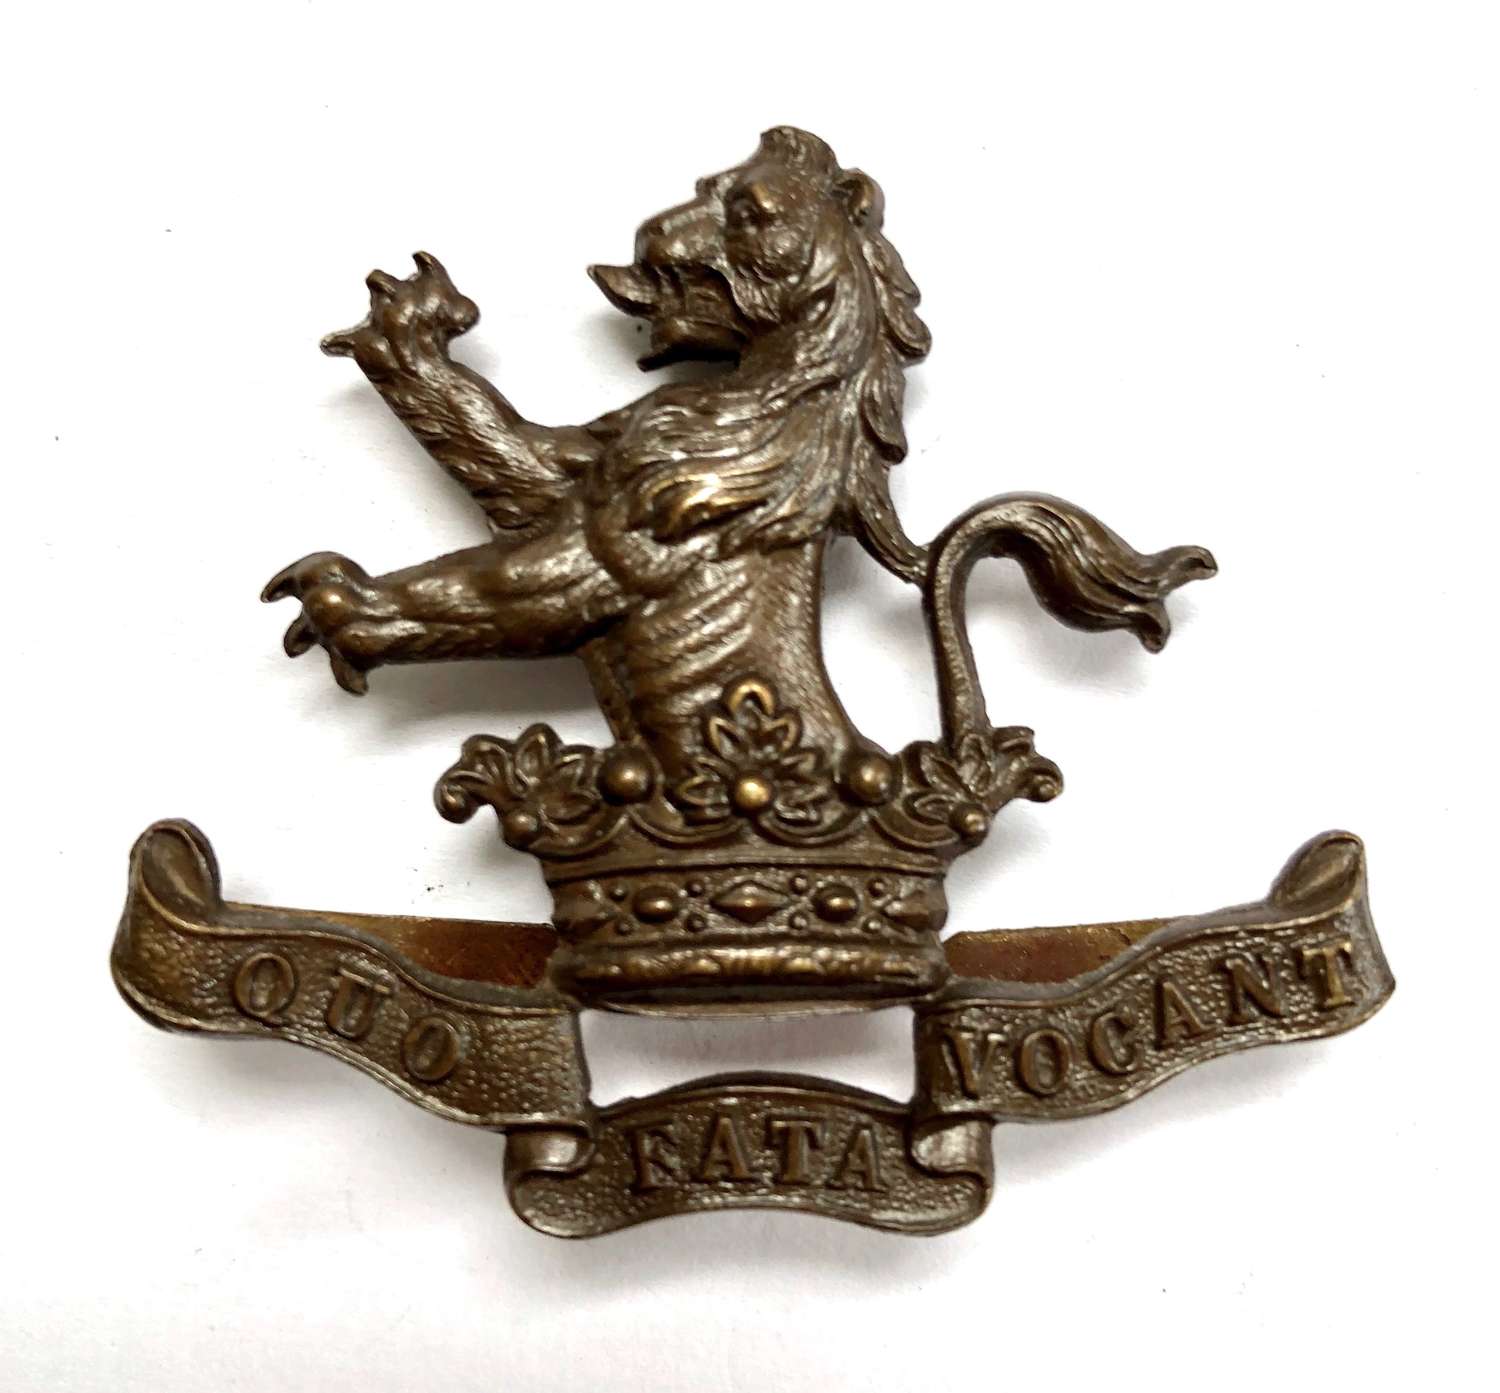 7th (Princess Royal’s) Dragoon Guards OSD cap badge c1906-22